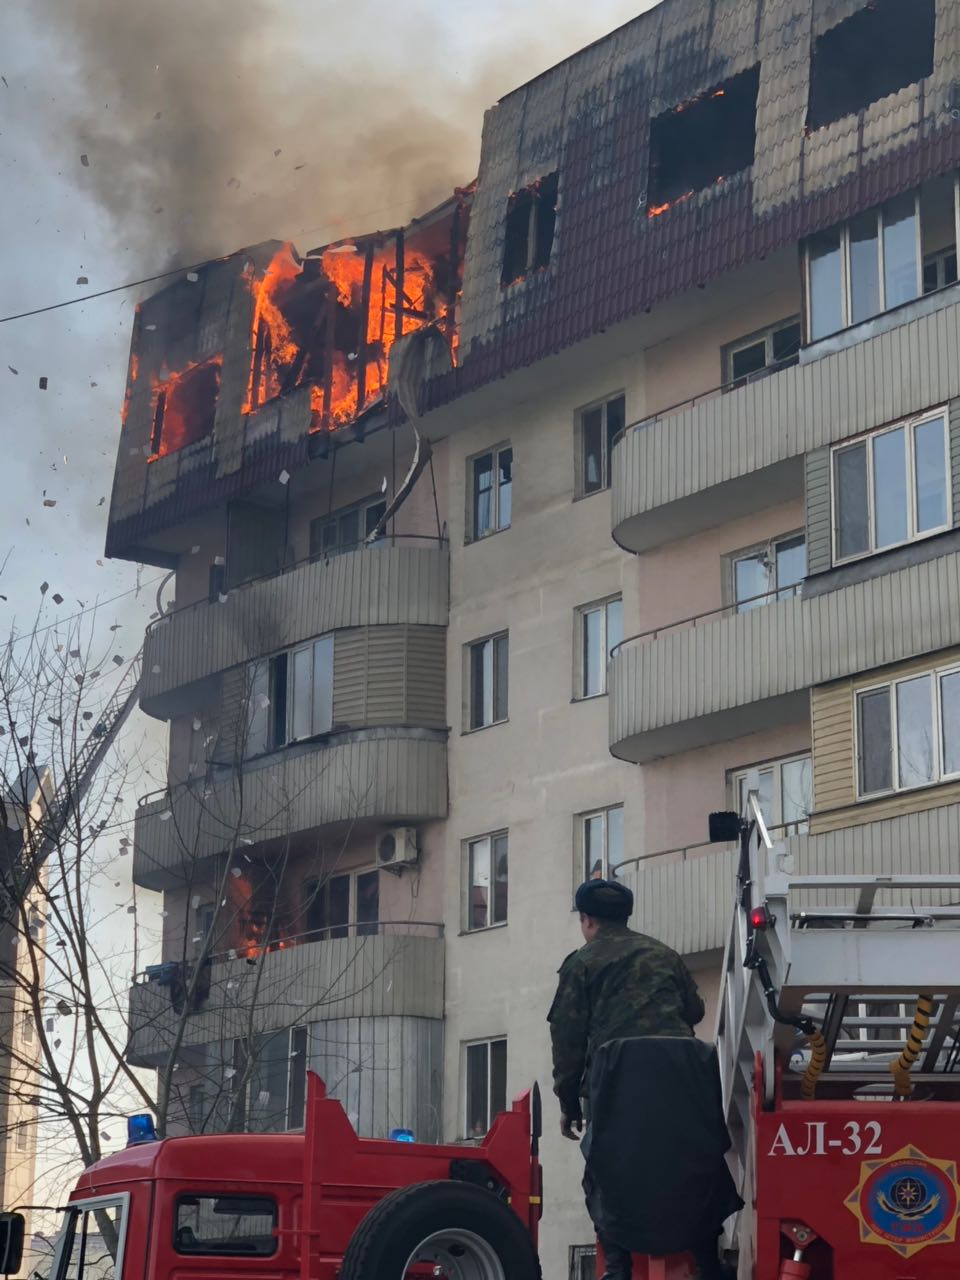 Буря в алматы сегодня. Пожар в многоэтажке. Пожар в Алматы. Алматы сгорел. Алматы пожар в многоэтажке.